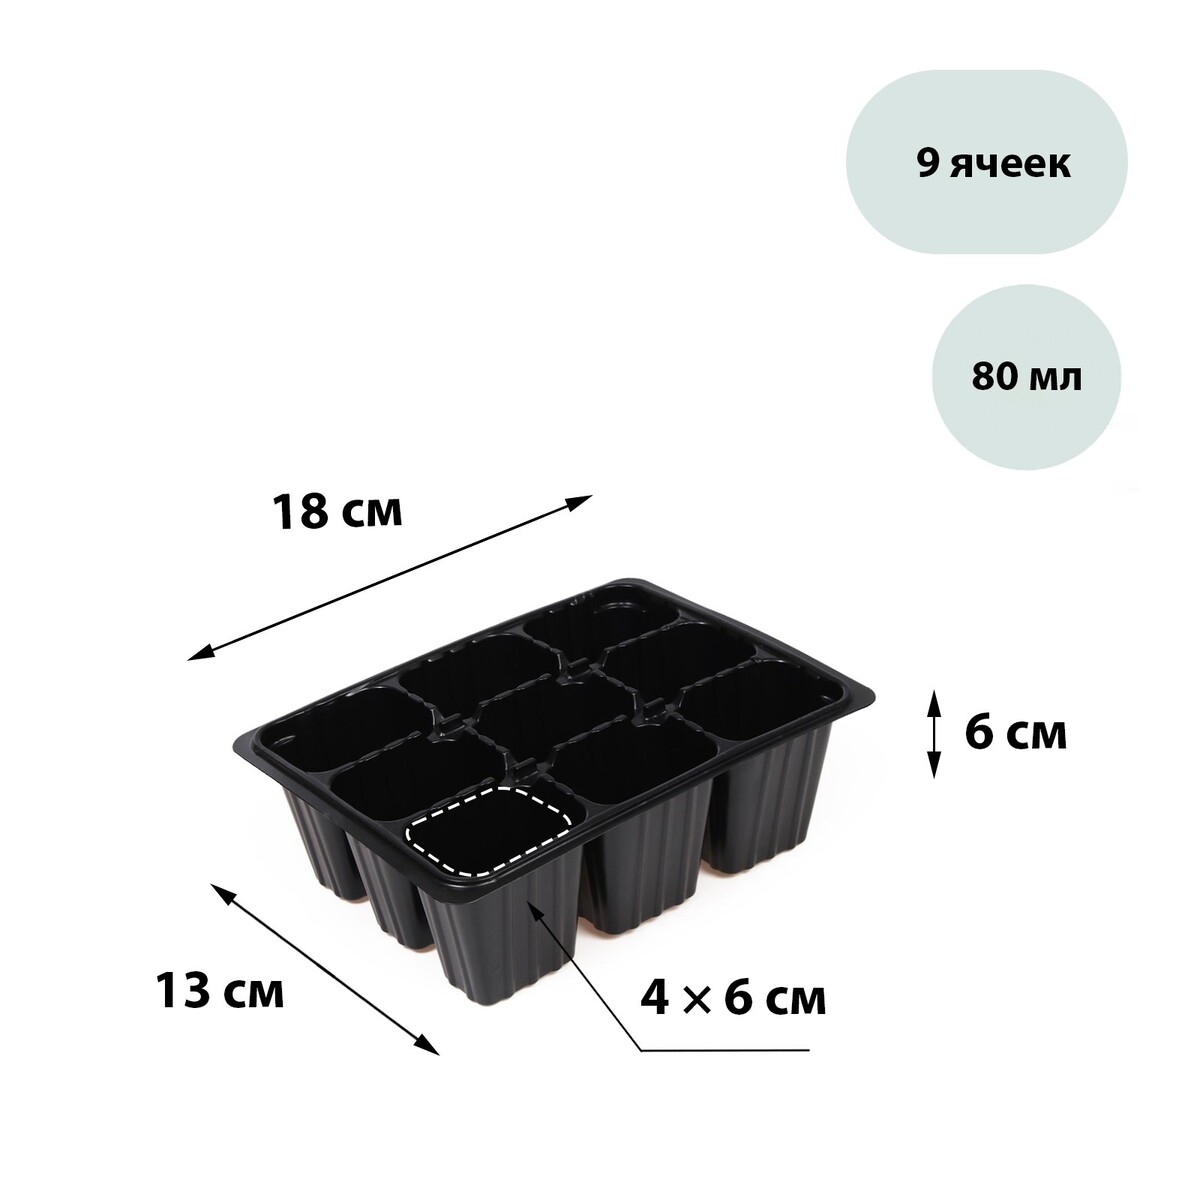 Кассета для рассады, на 9 ячеек, по 80 мл, пластиковая, черная, 18 × 13 × 6 см, greengo кассета для рассады на 9 ячеек по 80 мл пластиковая черная 18 × 13 × 6 см greengo